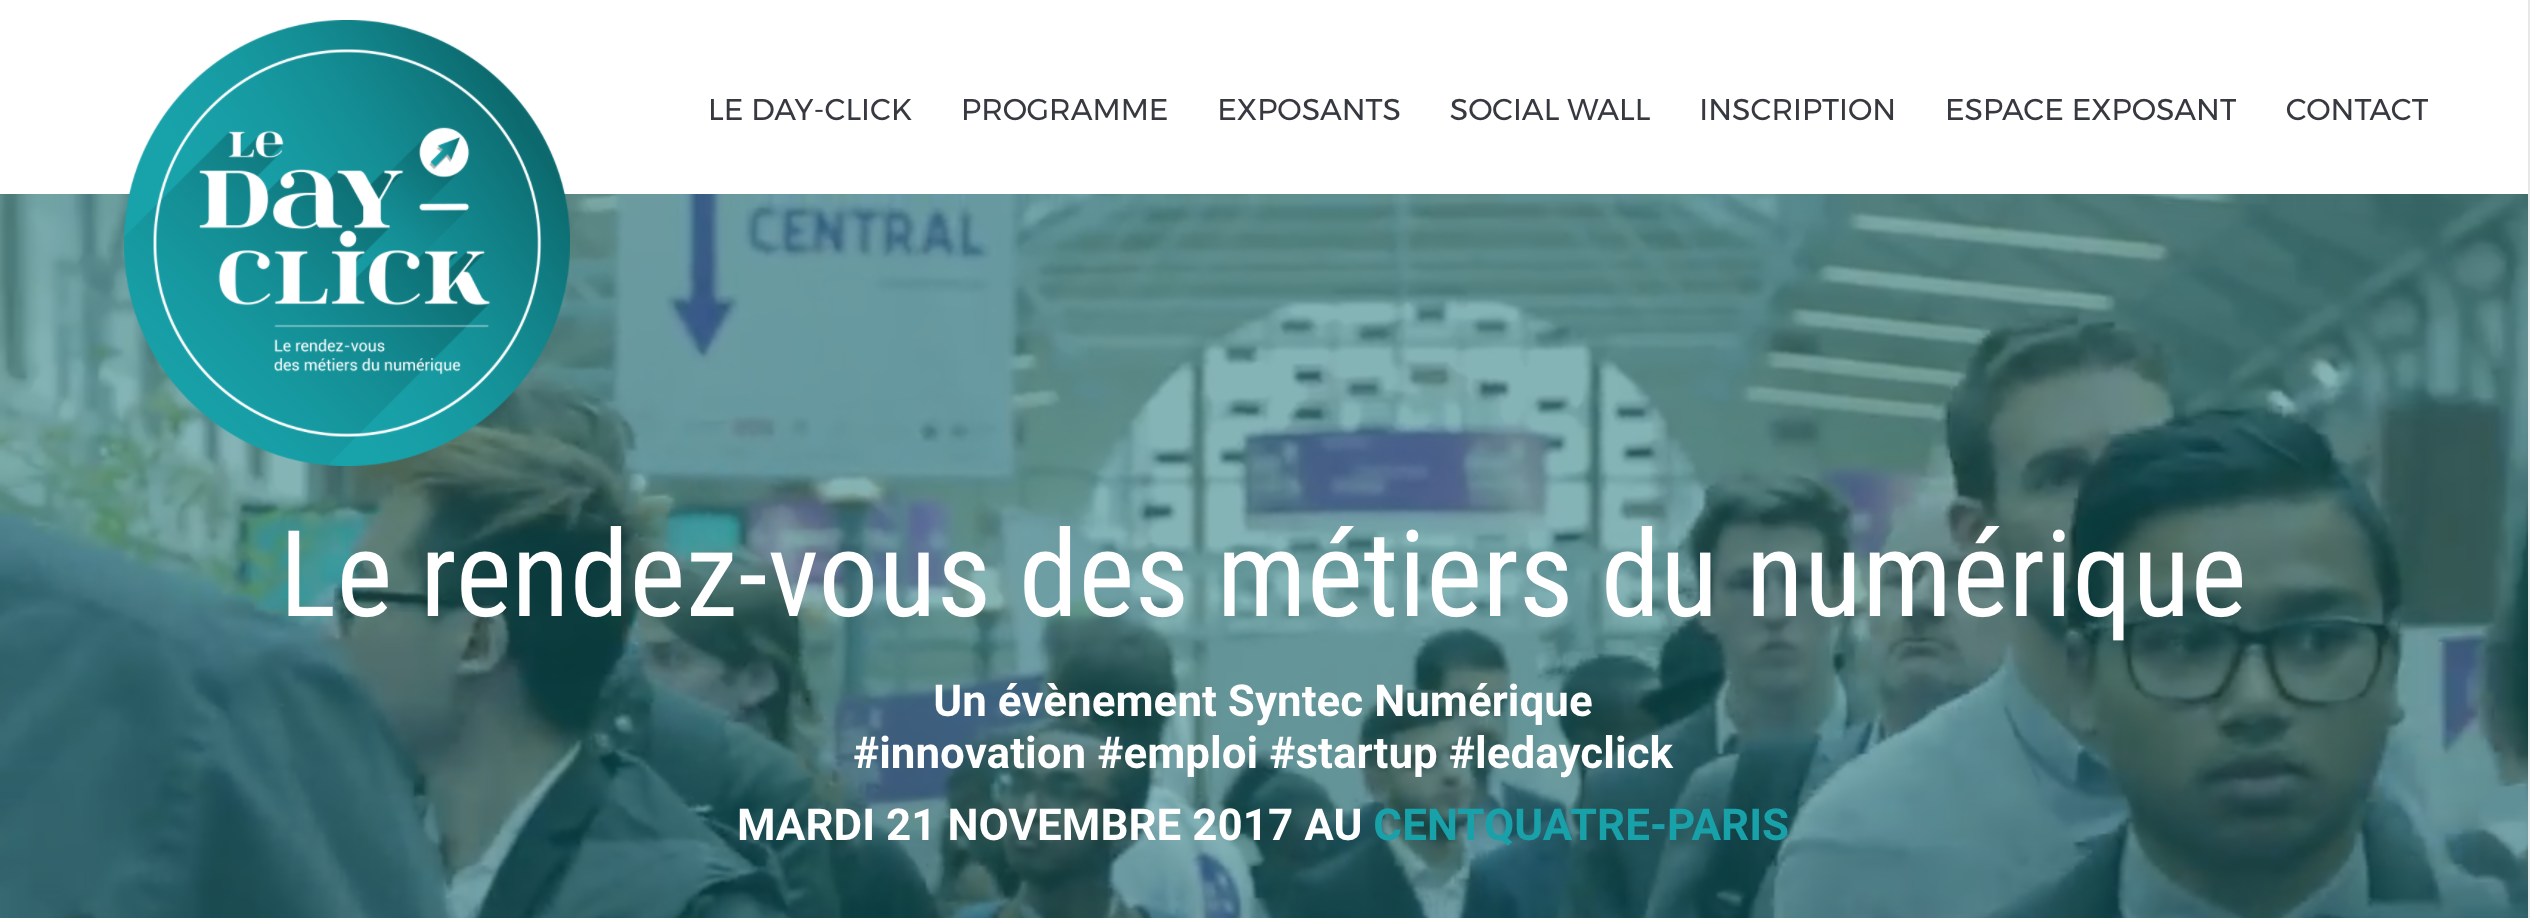 Dayclick - Le forum emploi des métiers du numérique par Syntec Numérique